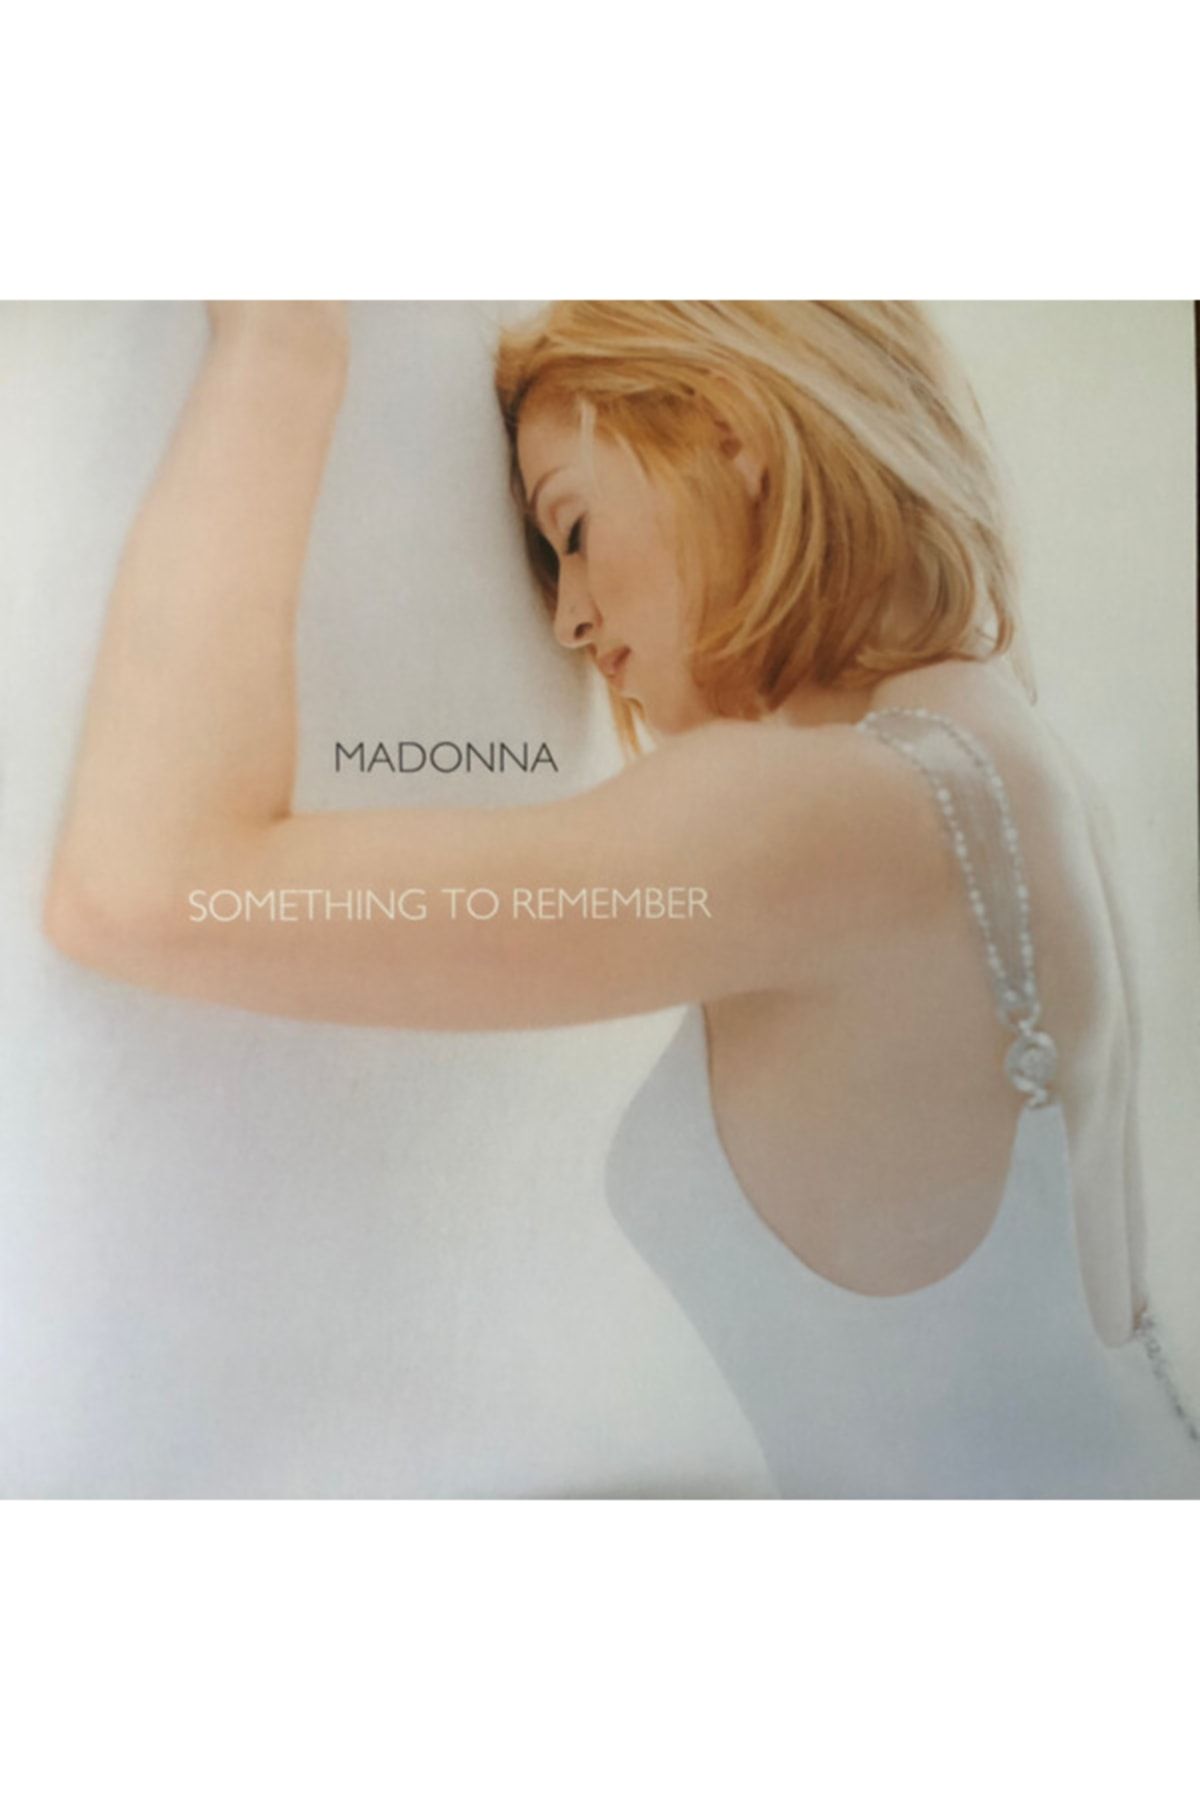 Vinylium Zone Madonna – Something To Remember Vinyl, Lp, Album, Compilation, Reissue, 180 Gram Plak